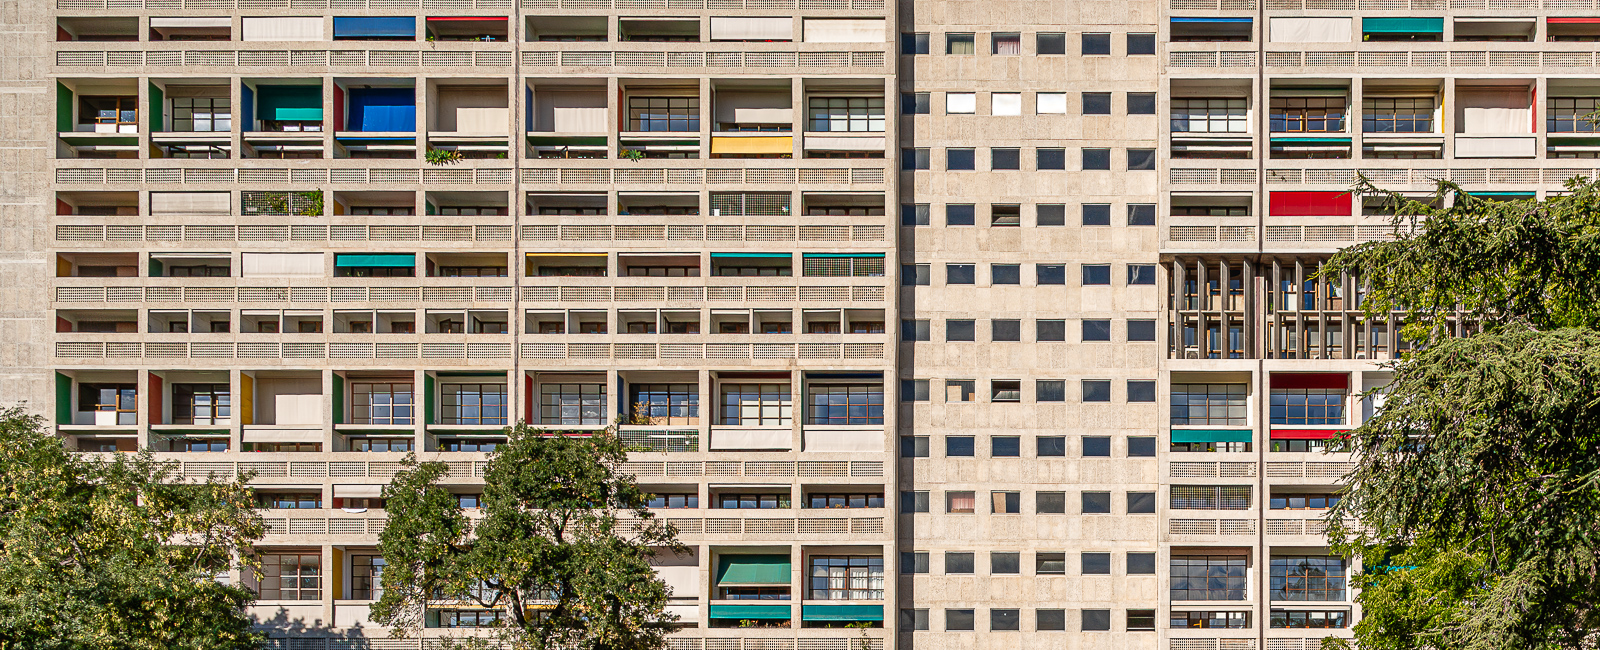 Die Cité radieuse erinnert mit Ihren Fensterbändern und Loggien eher an ein Kreuzfahrtschiff, als an ein Wohnhaus.